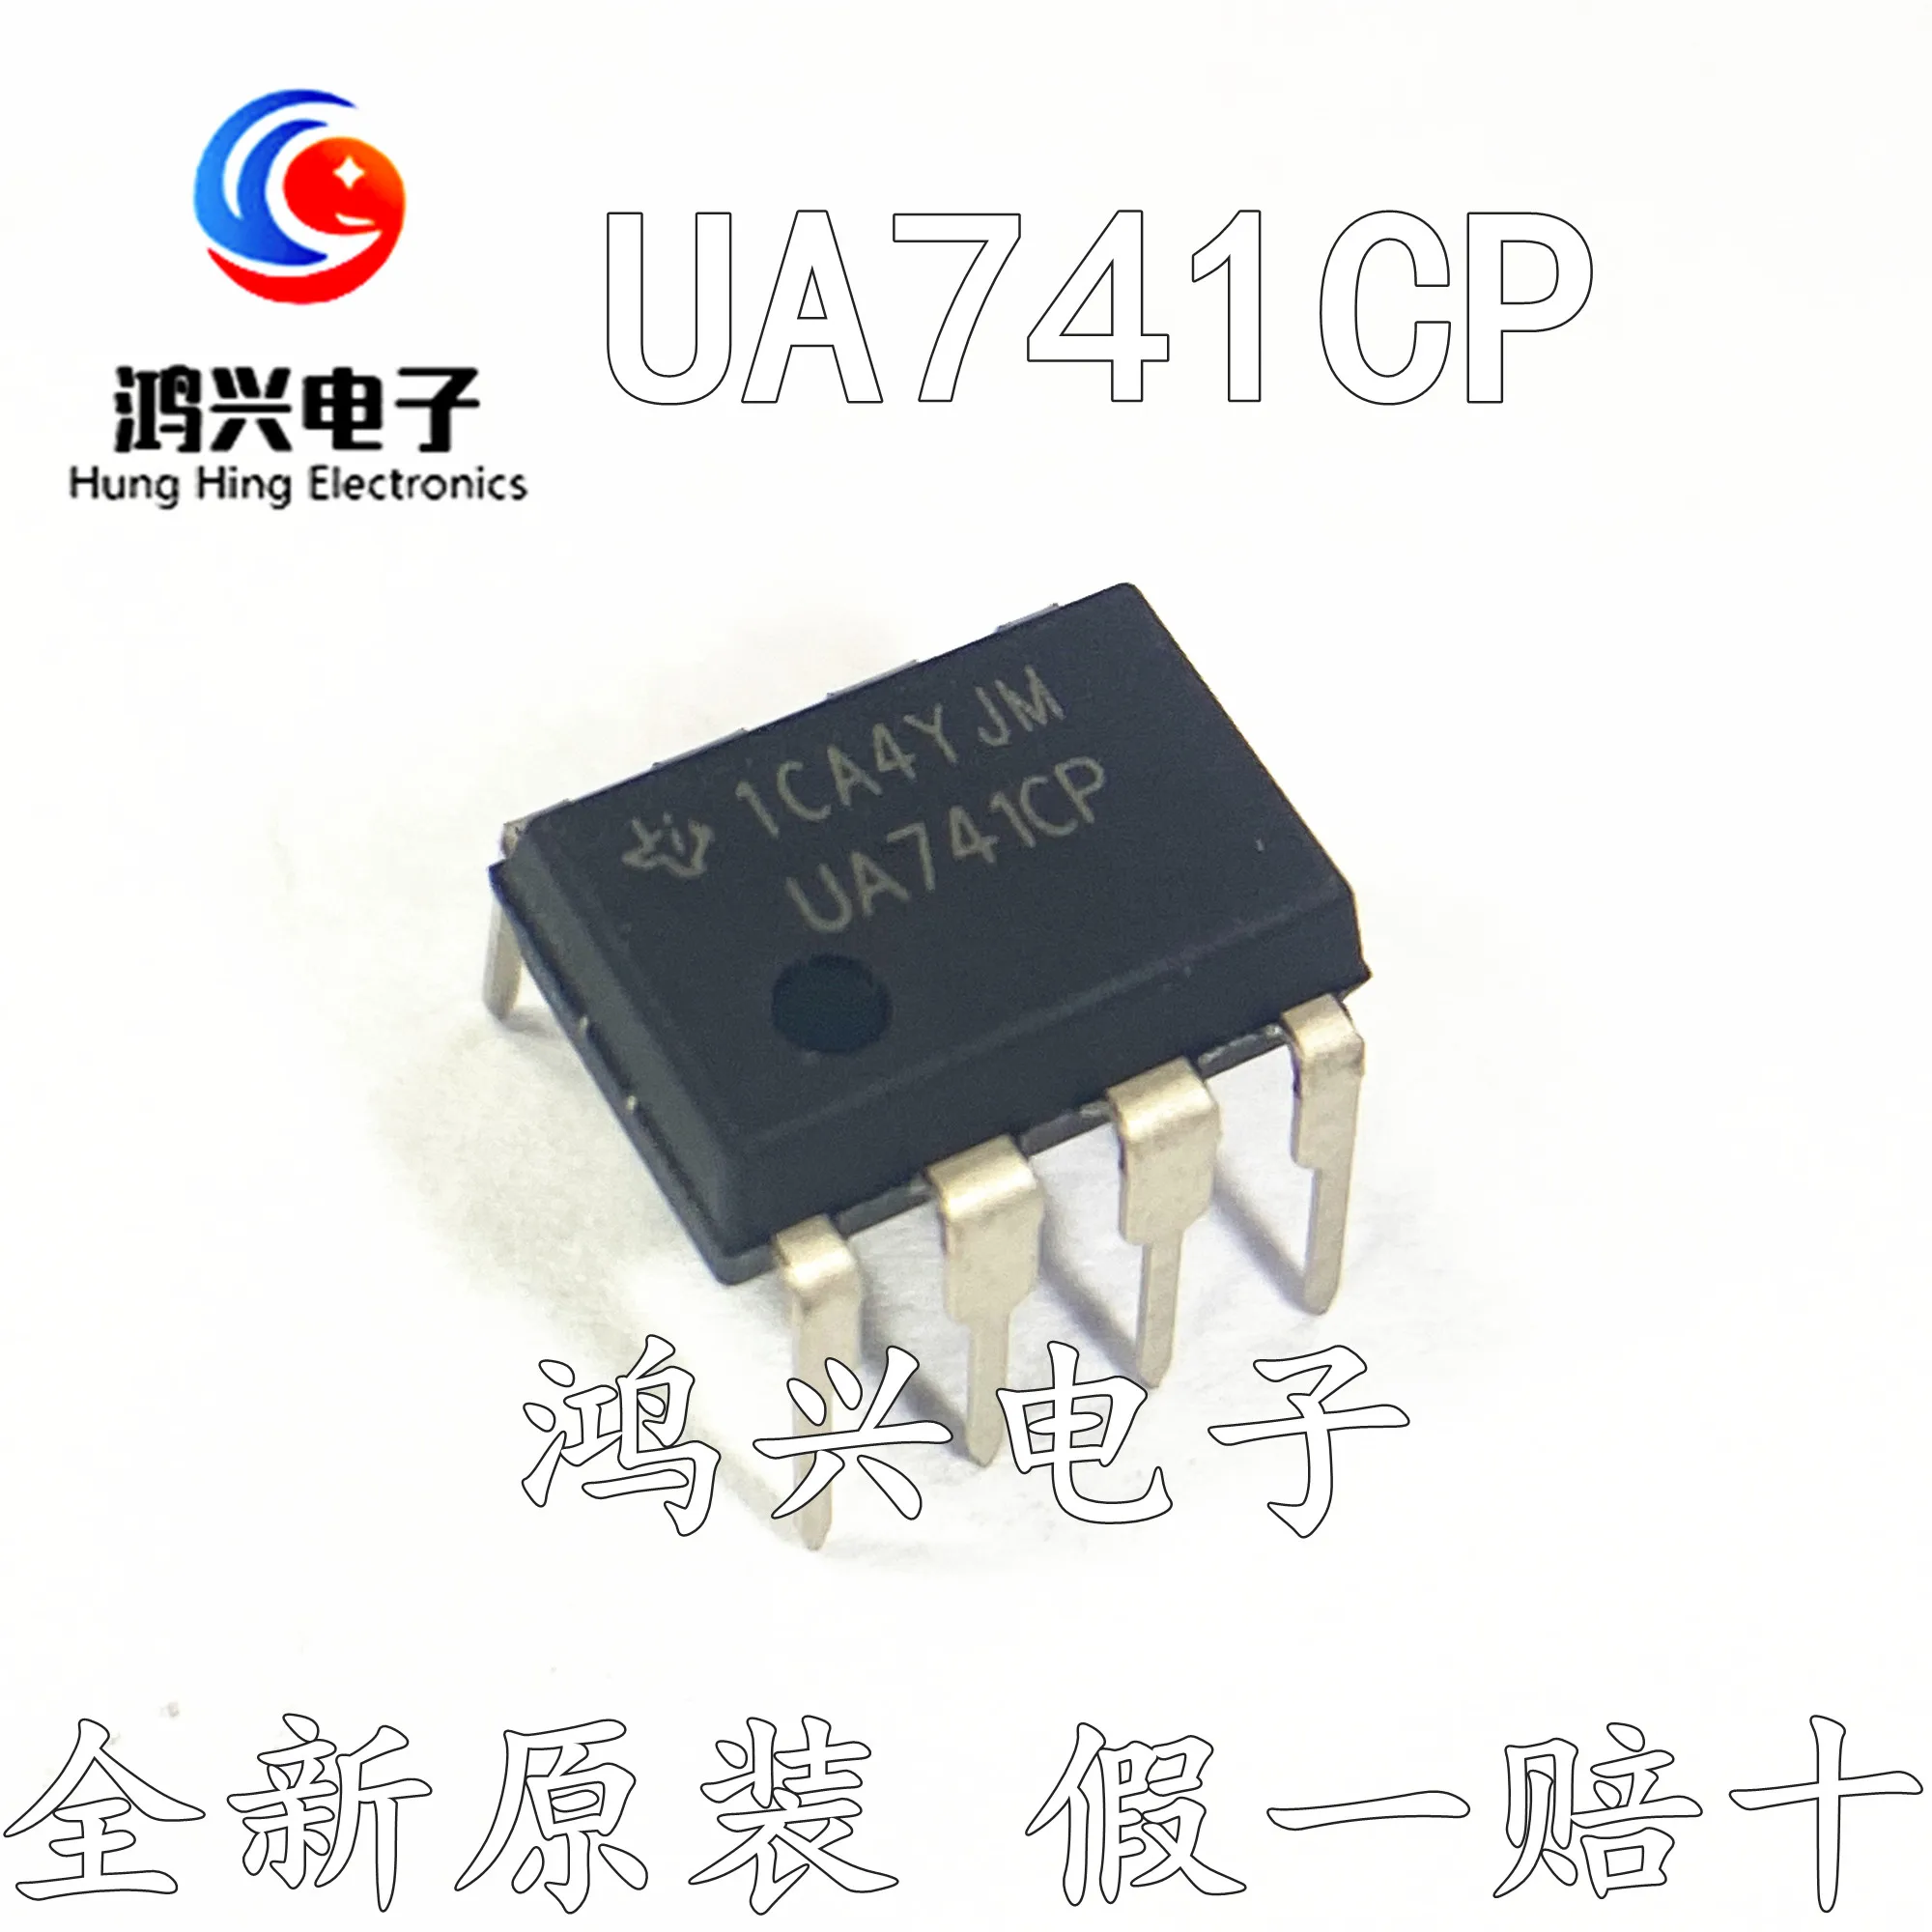 

30 шт. Оригинальный Новый 30 шт. Оригинальный Новый UA741CP UA741 Gaoyi одиночный операционный усилитель чип DIP8